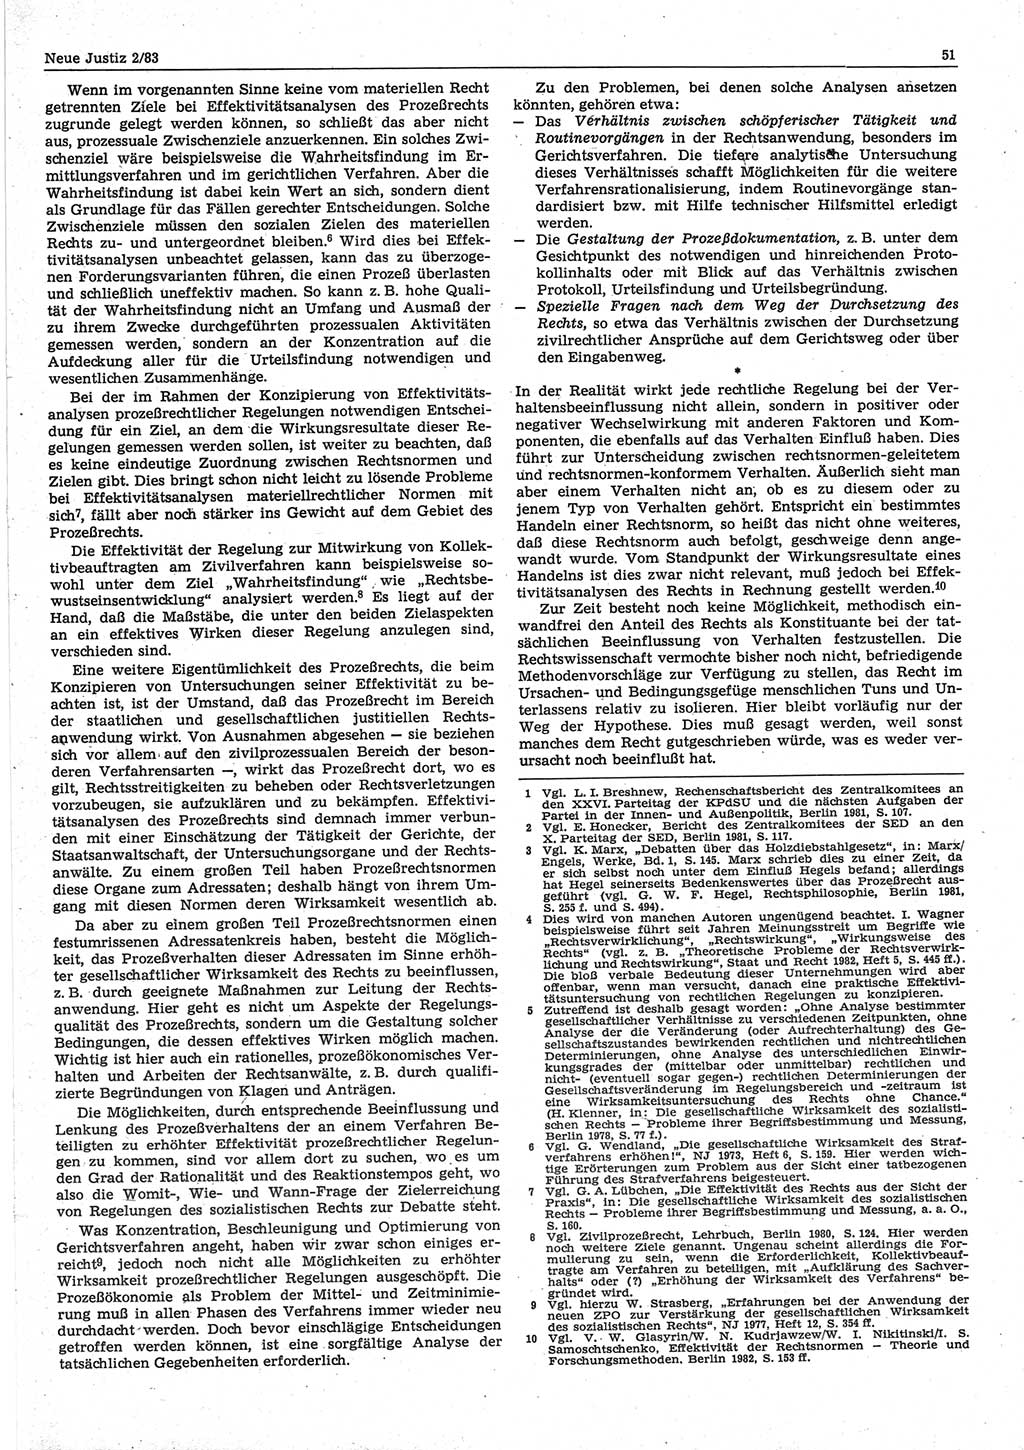 Neue Justiz (NJ), Zeitschrift für sozialistisches Recht und Gesetzlichkeit [Deutsche Demokratische Republik (DDR)], 37. Jahrgang 1983, Seite 51 (NJ DDR 1983, S. 51)